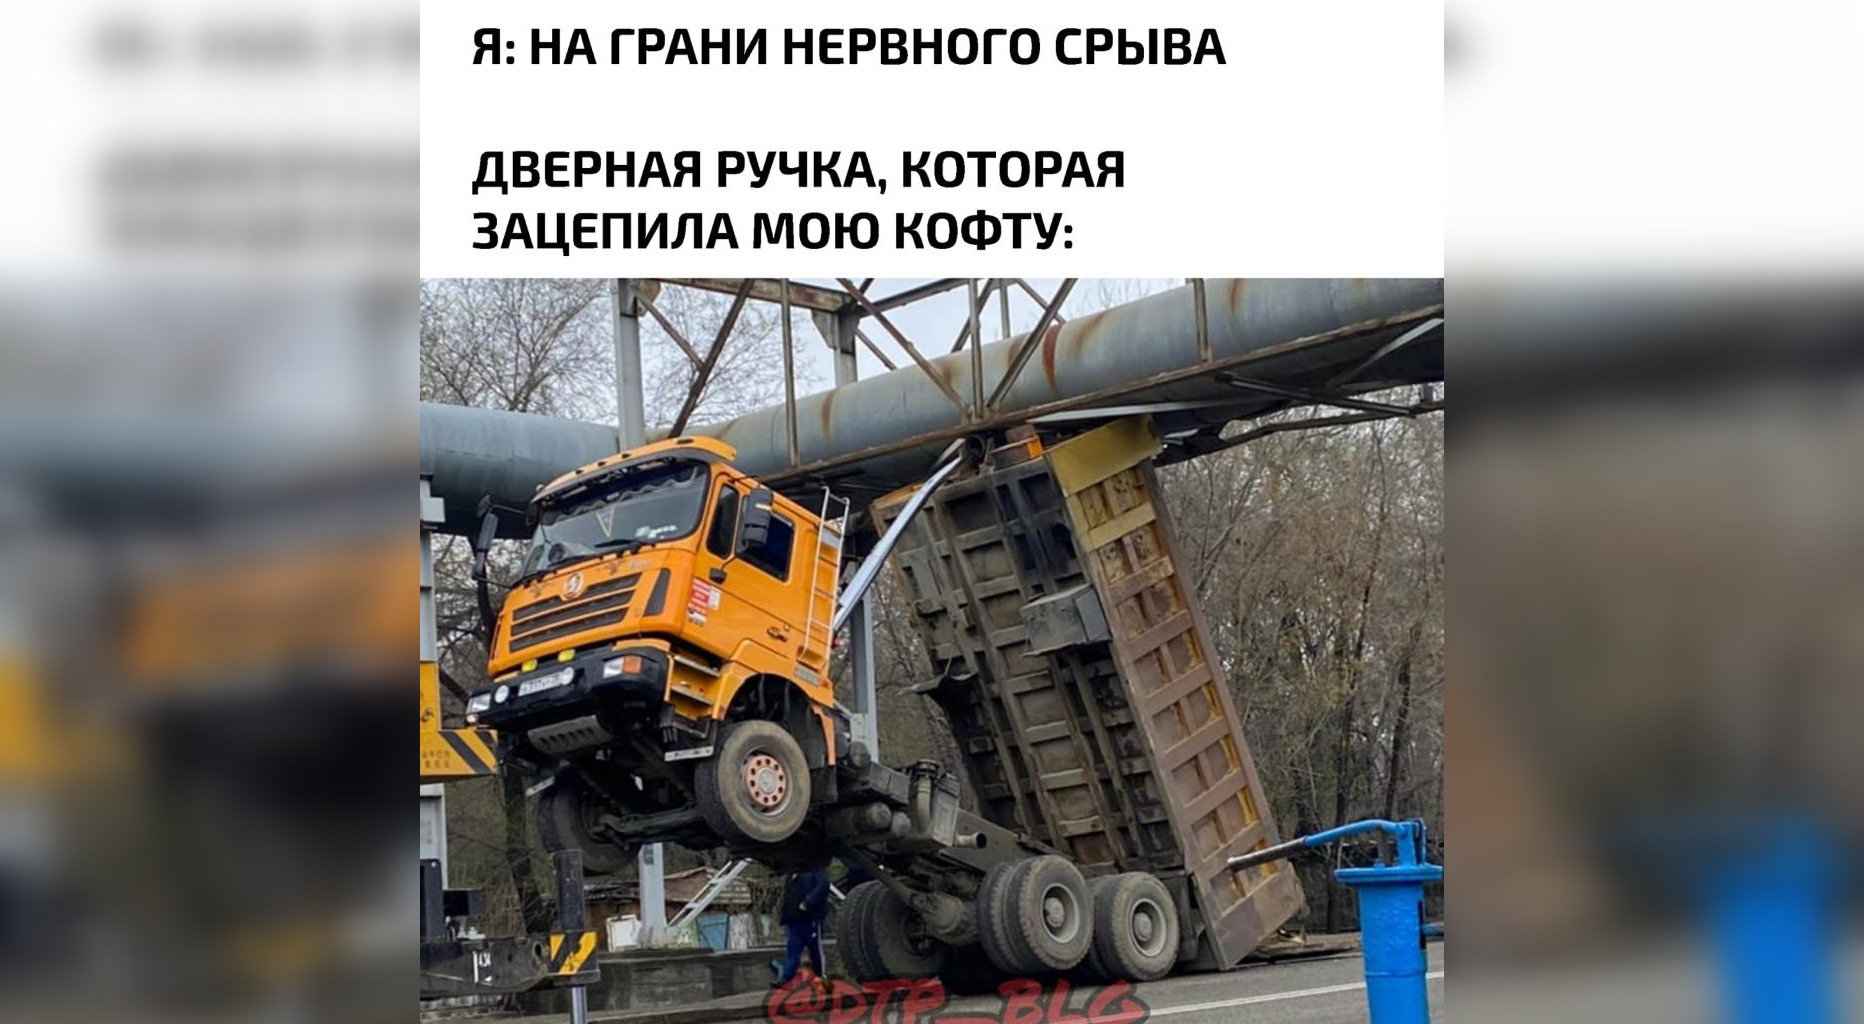 В Благовещенск - ради инфраструктуры: новая порция мемов от портала 2x2.su